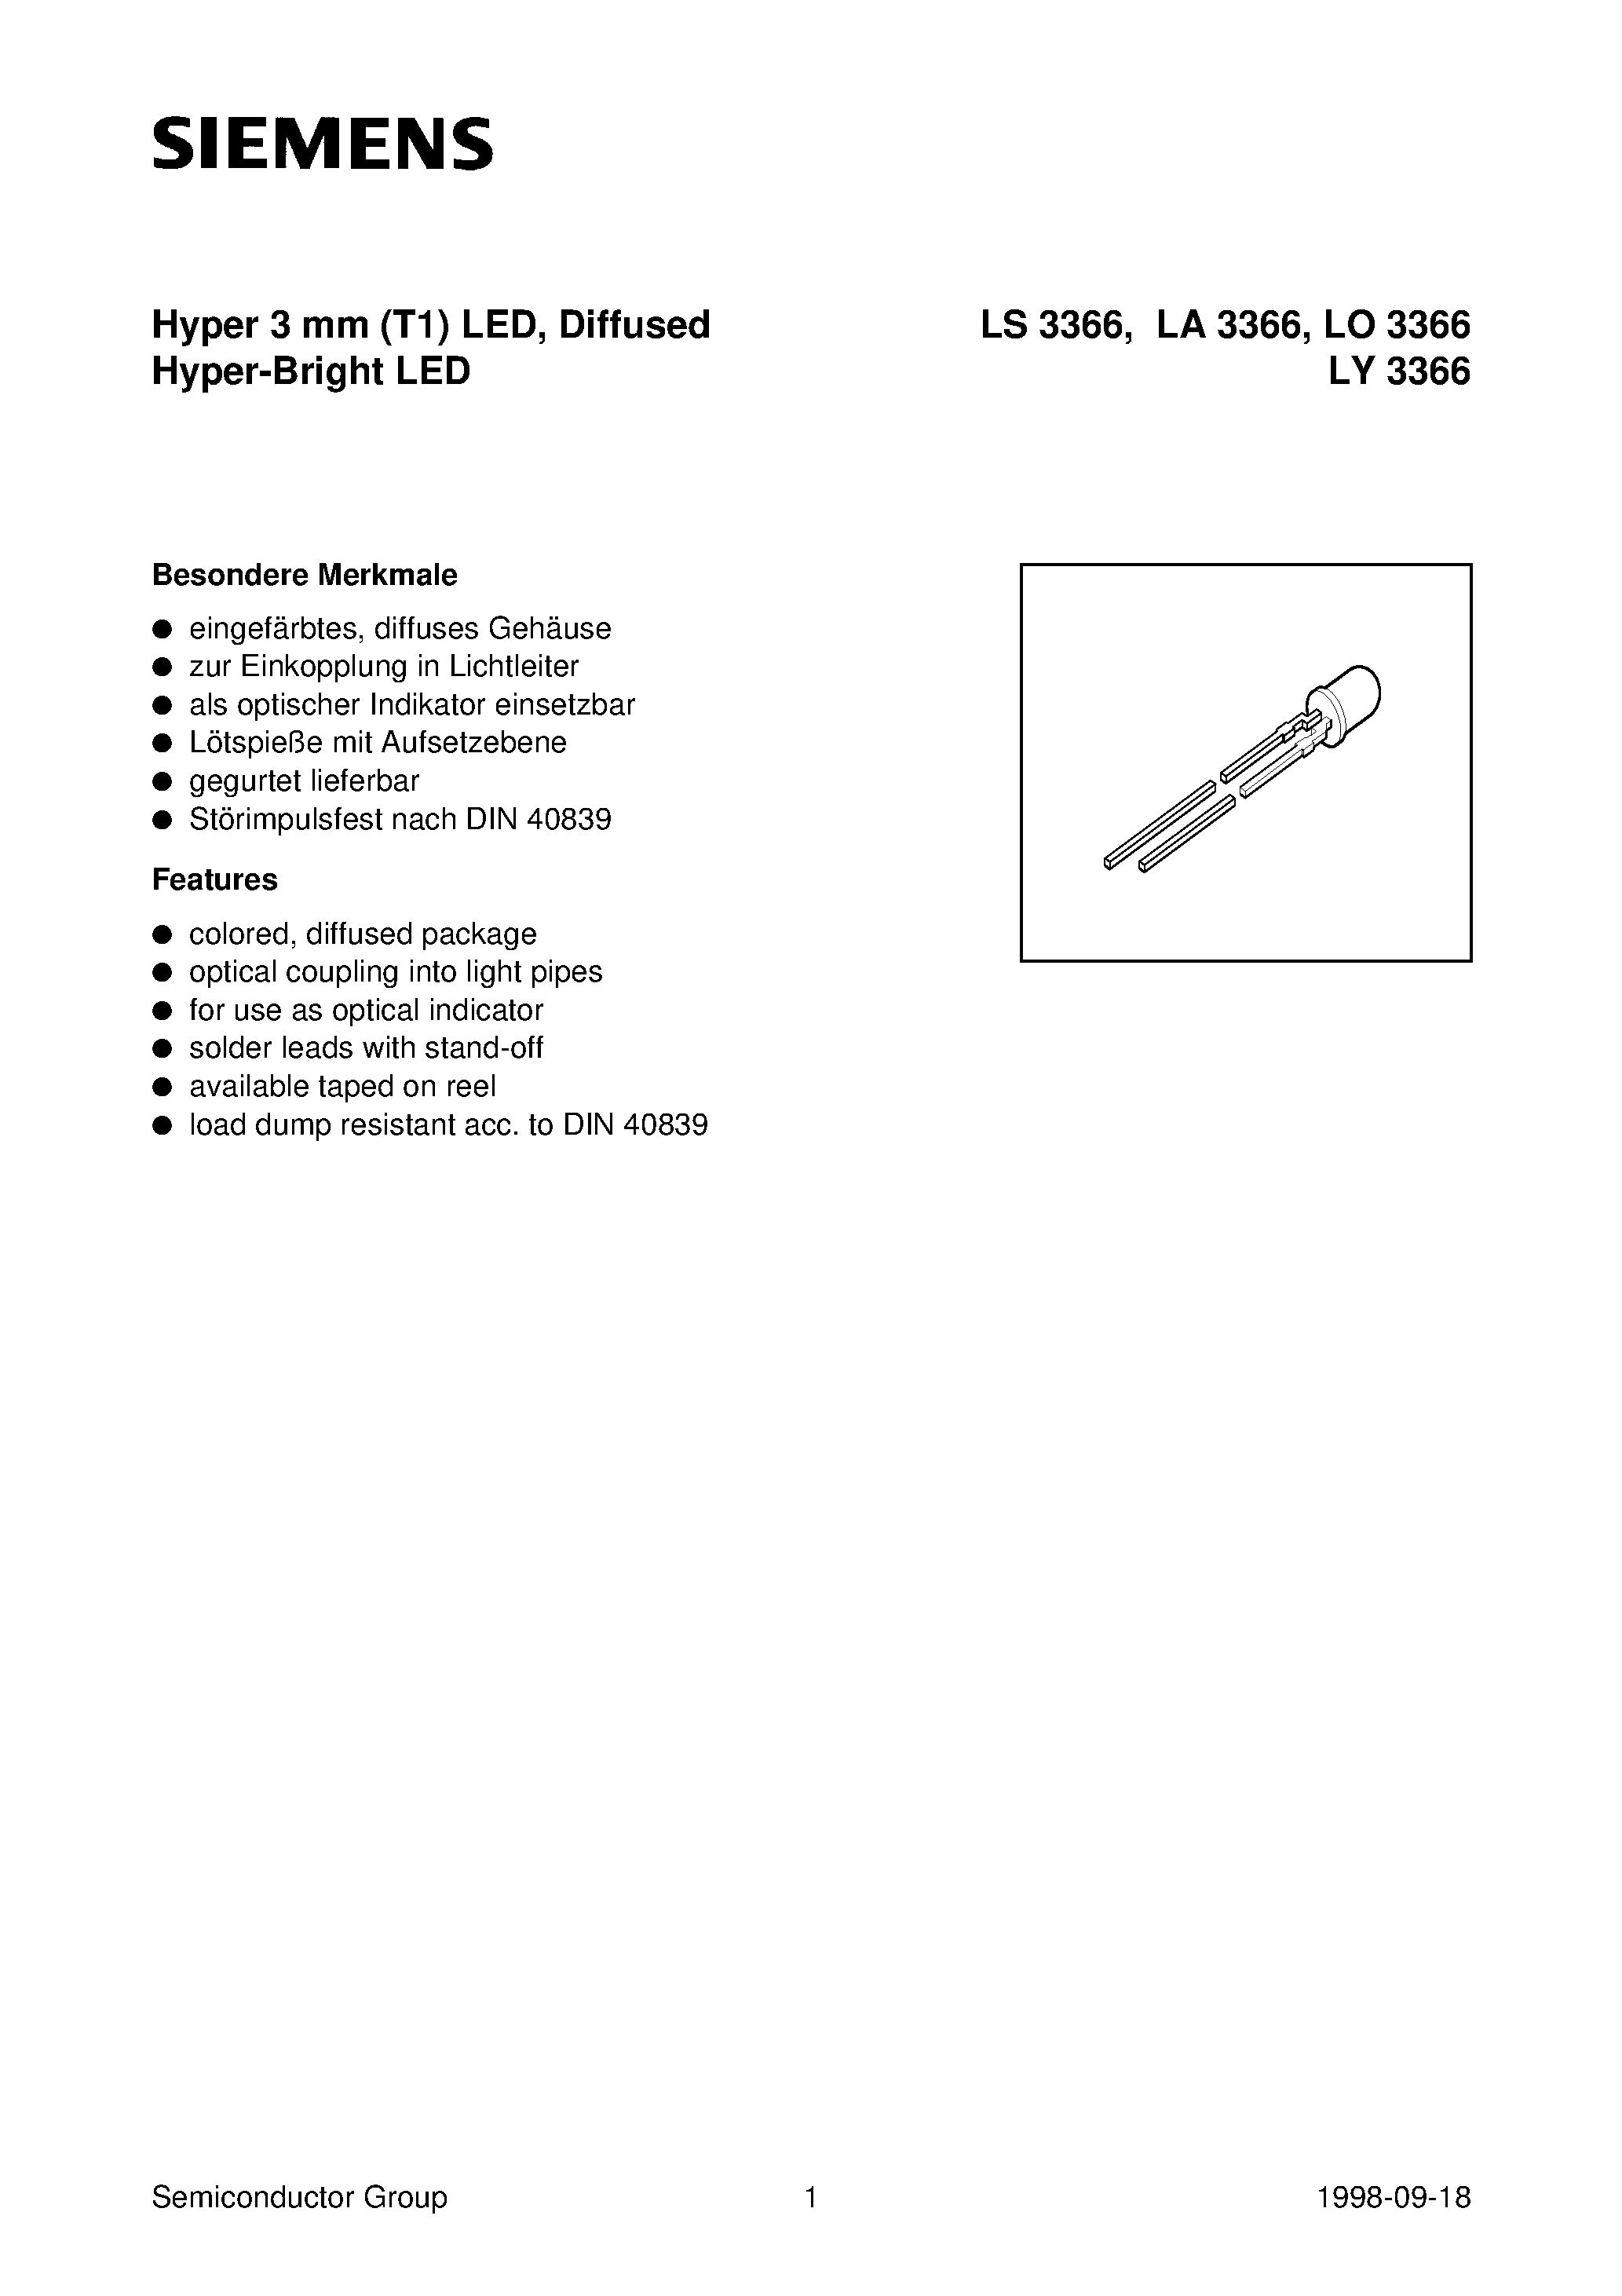 Даташит LS3366-Q - Hyper 3 mm T1 LED / Diffused Hyper-Bright LED страница 1